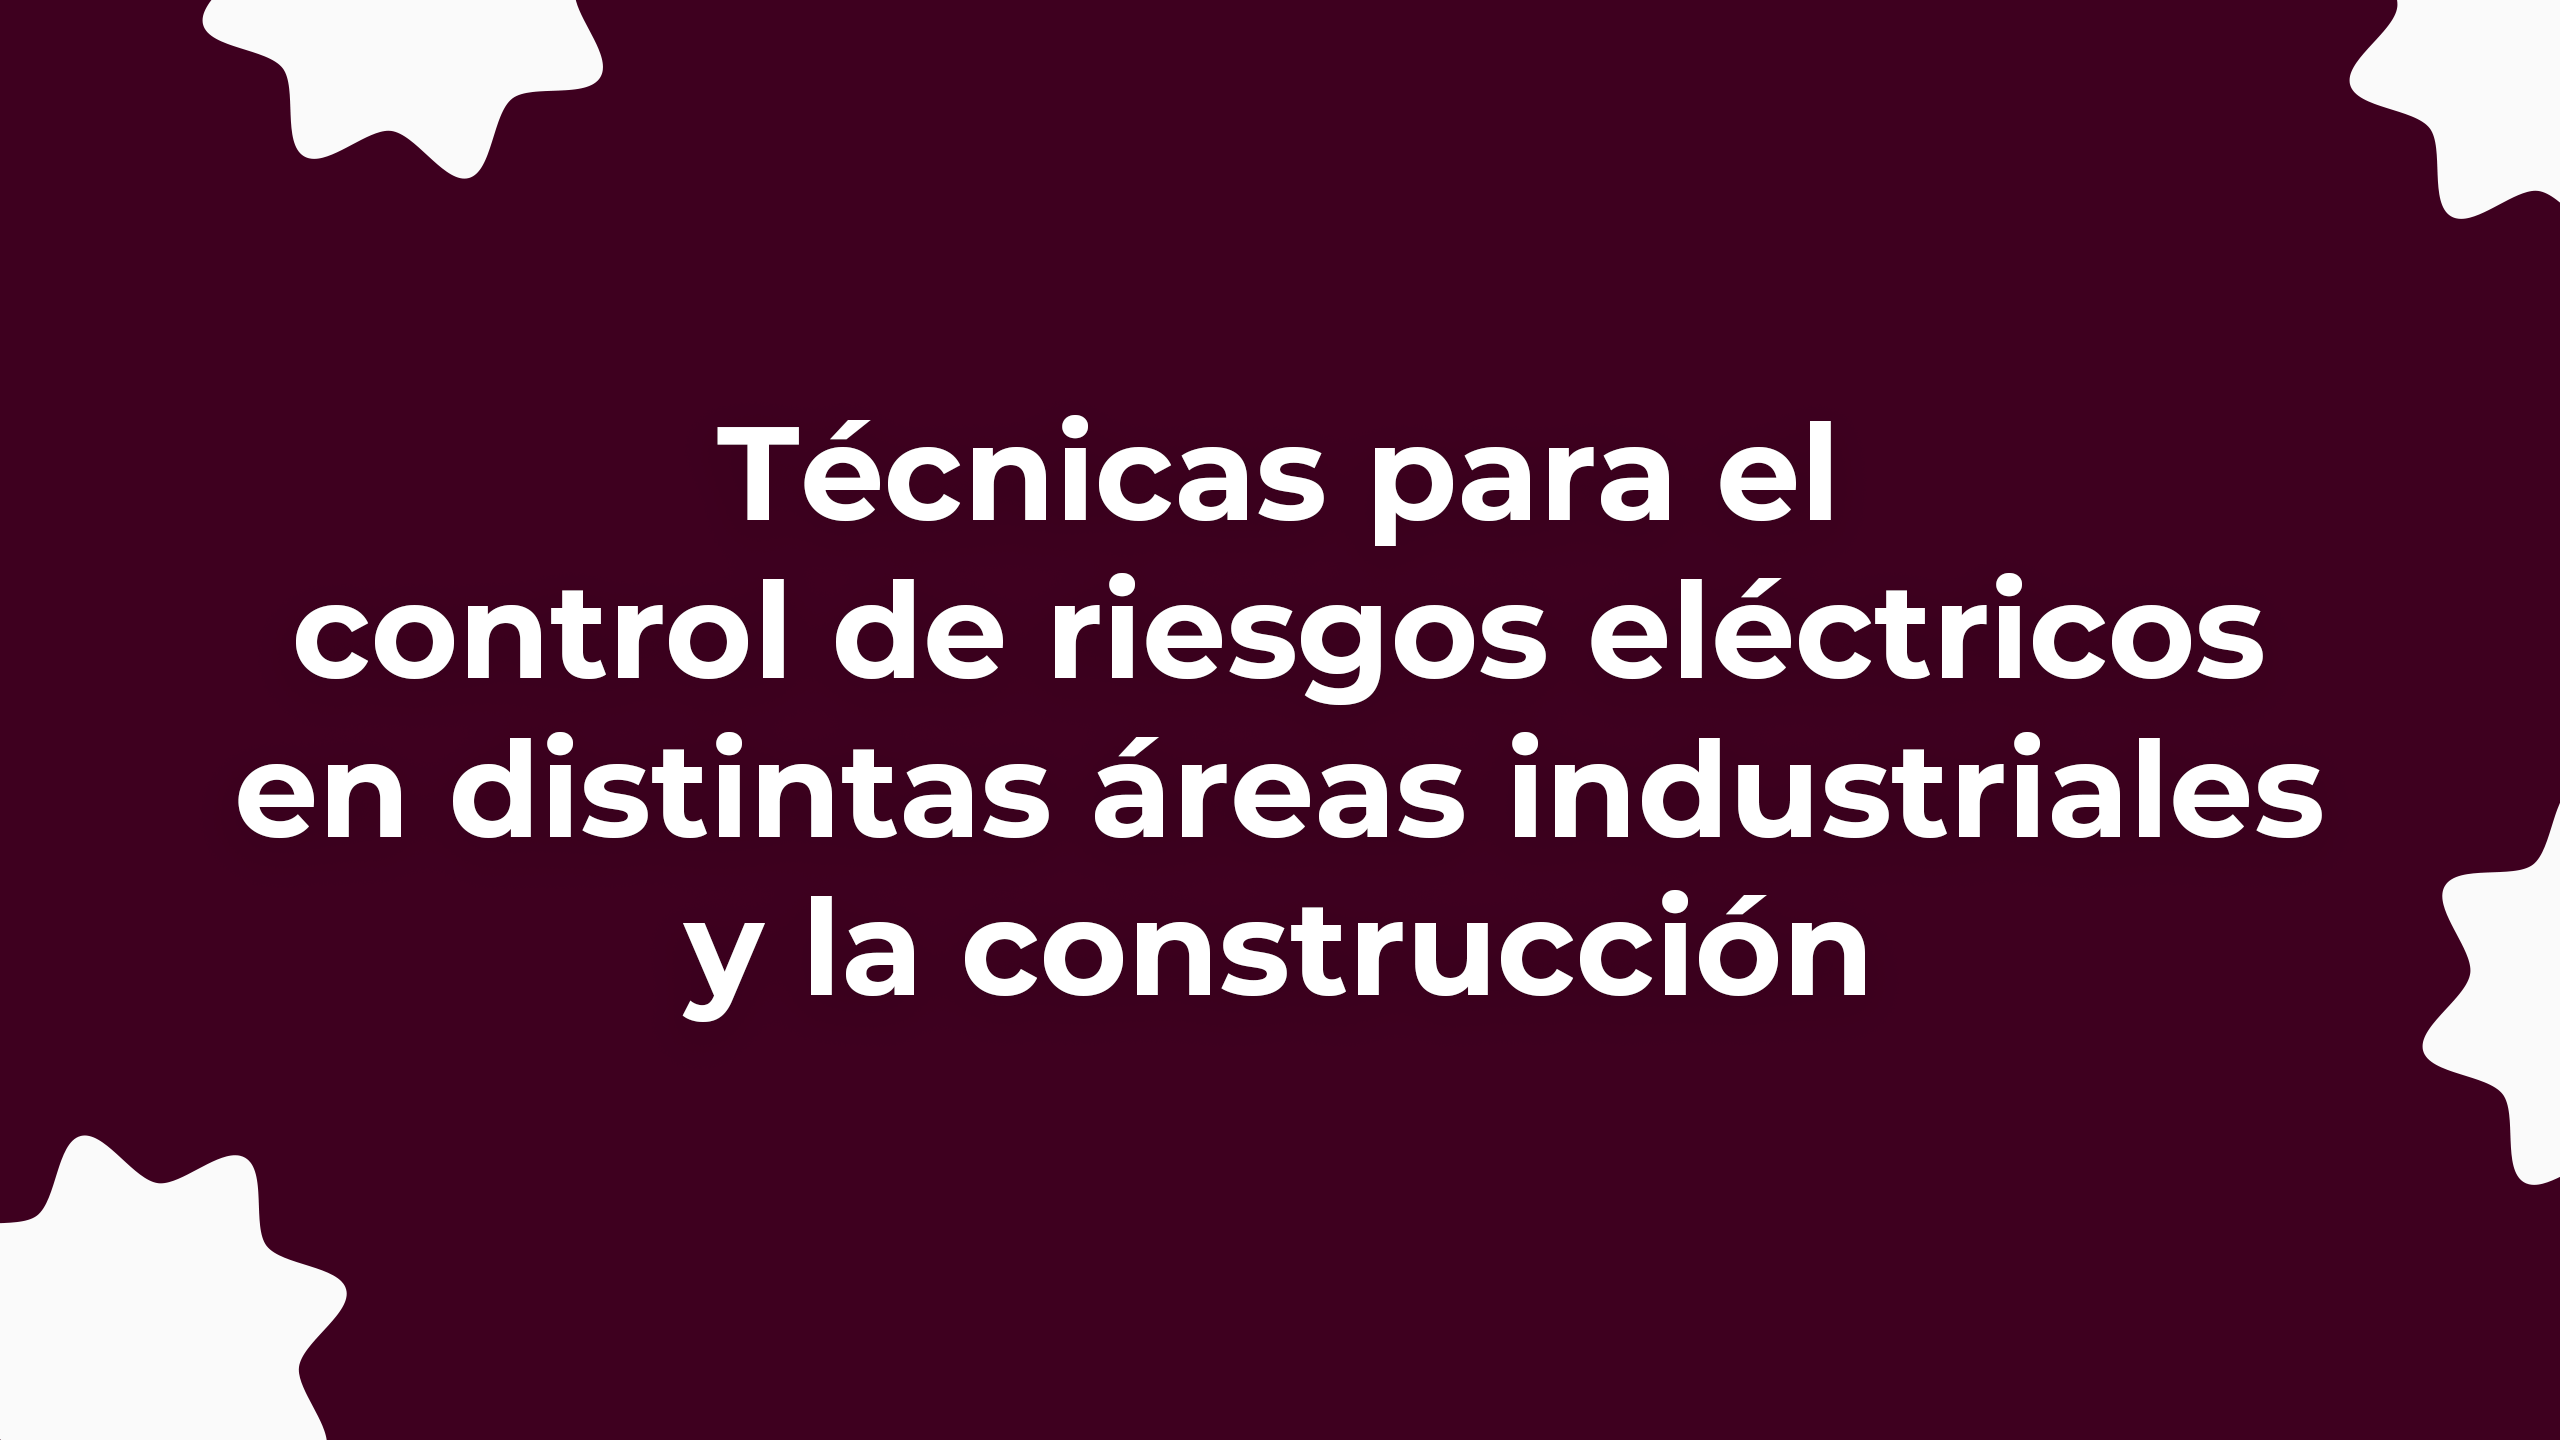 Técnicas para el control de riesgos eléctricos en distintas áreas industriales y la construcción